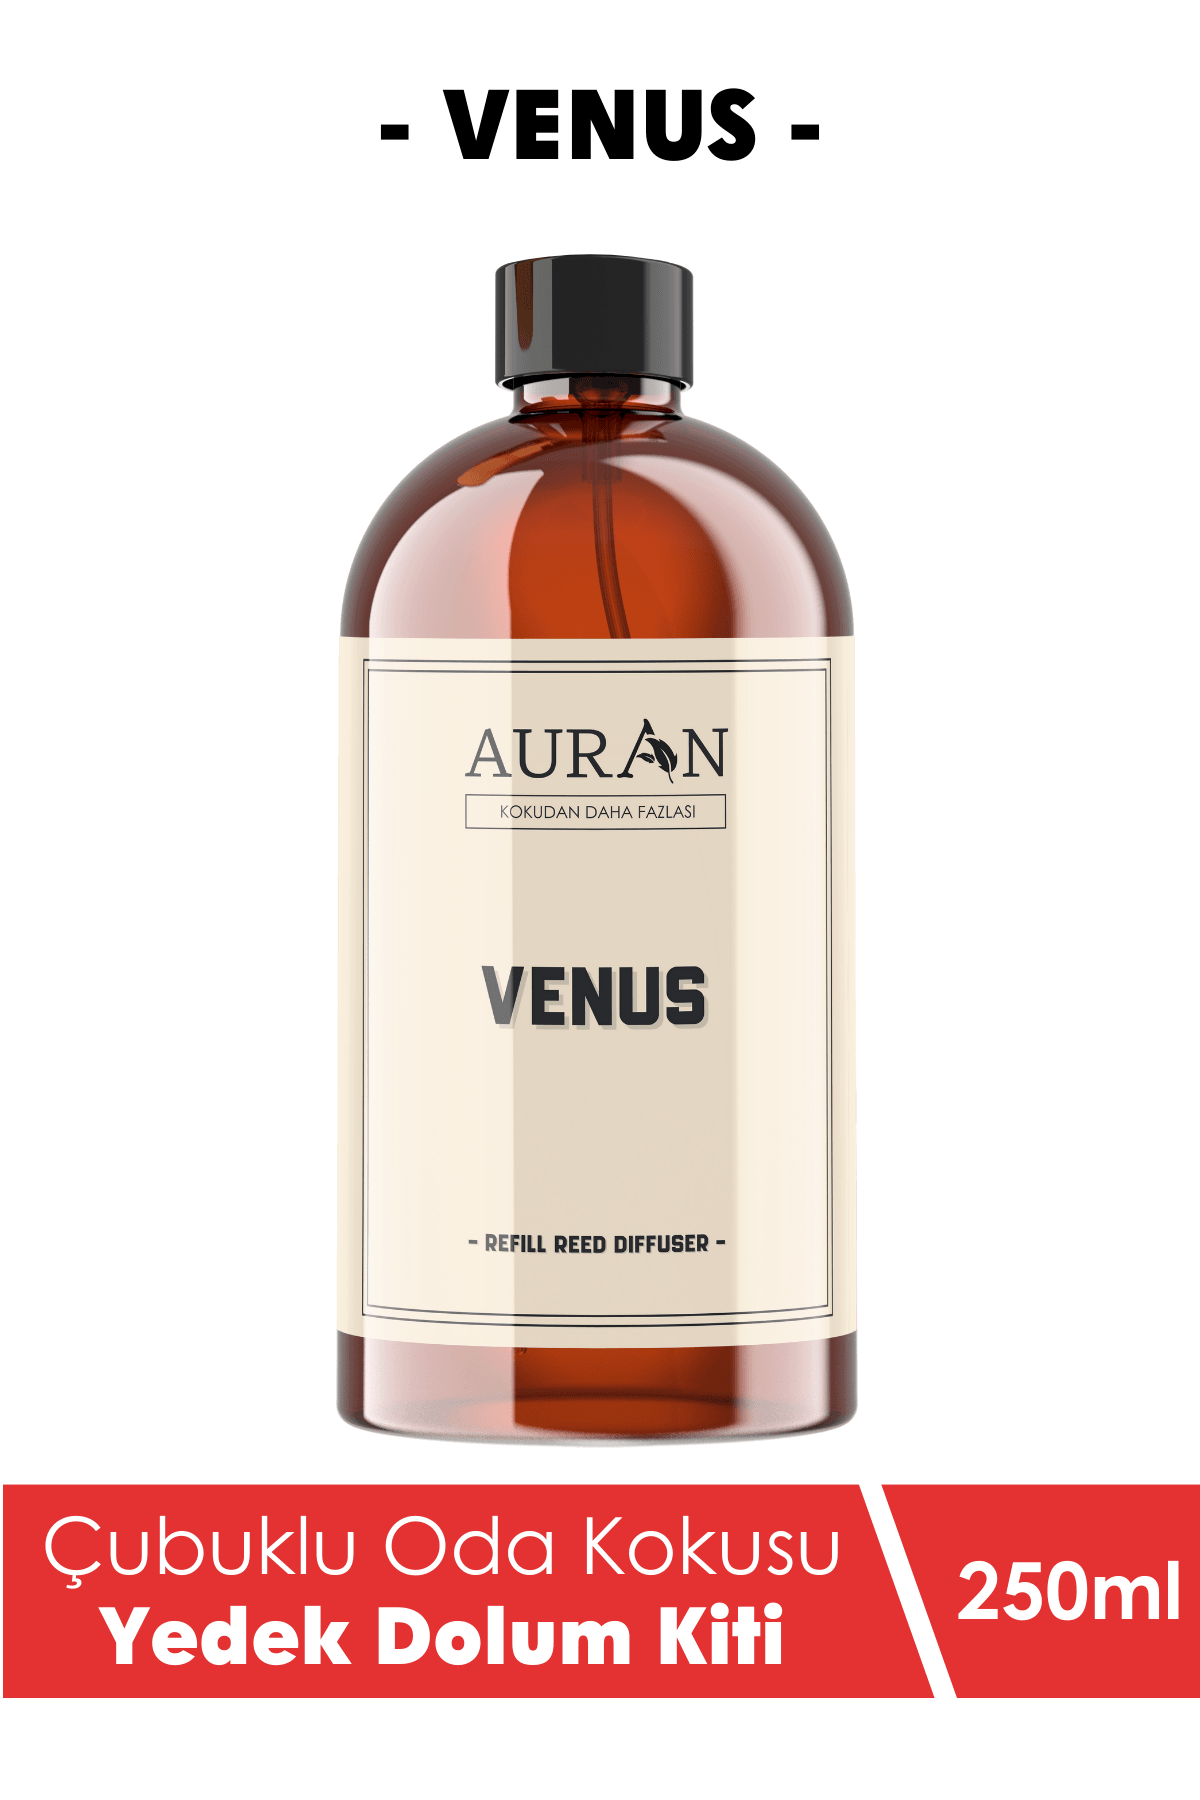 Venüs Yedek Çubuklu Oda Ve Ortam Kokusu Esansı Yedek Dolum Venus 250ml